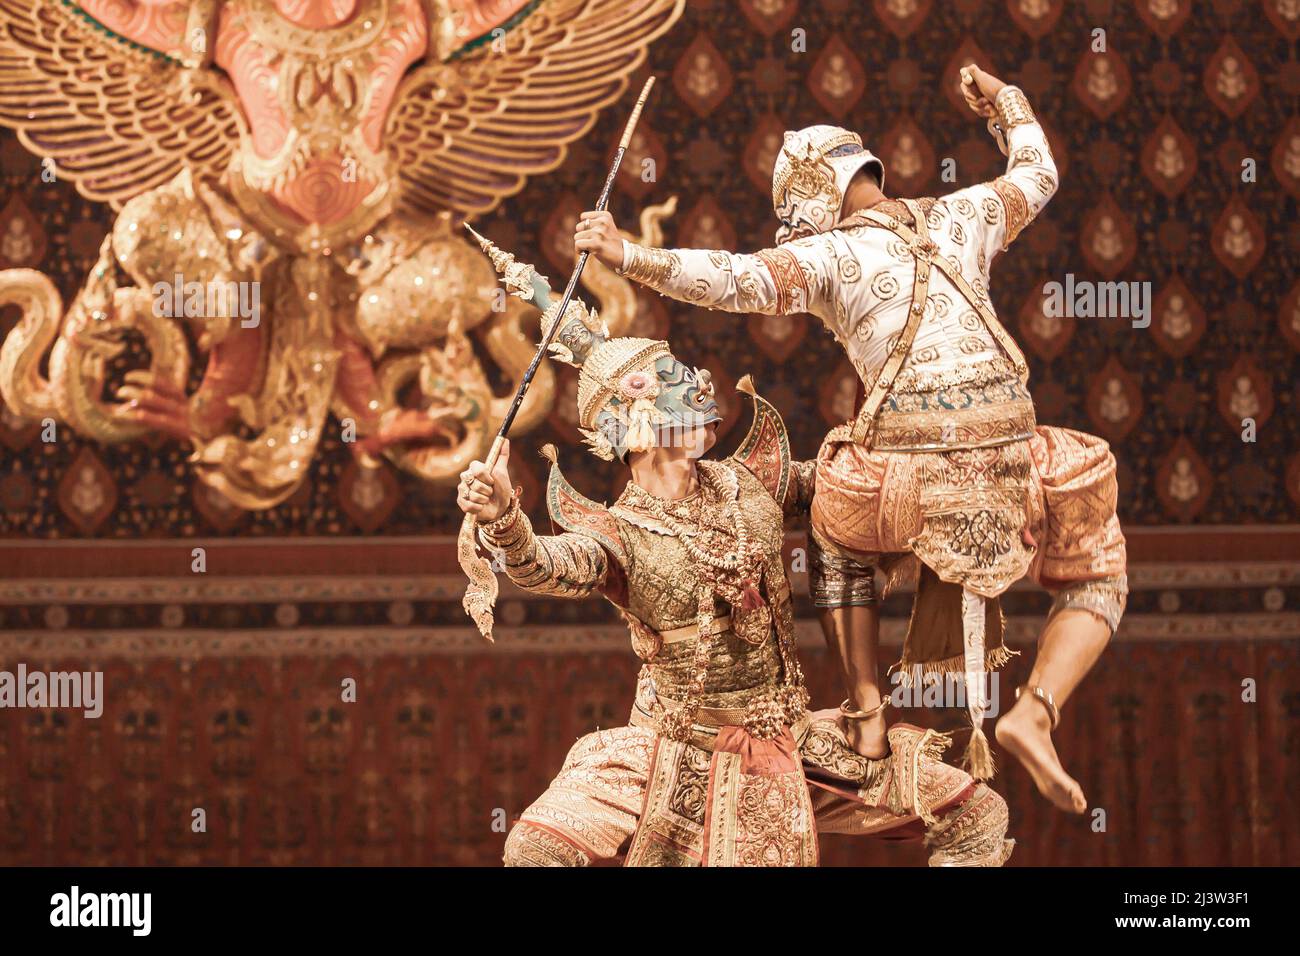 Thai Khon spectacle de danse masqué, la scène de bataille entre le roi démon et dieu singe est appelé Thotsakan et Hanuman dans l'épopée de Ramayana. Thaïlande. Banque D'Images